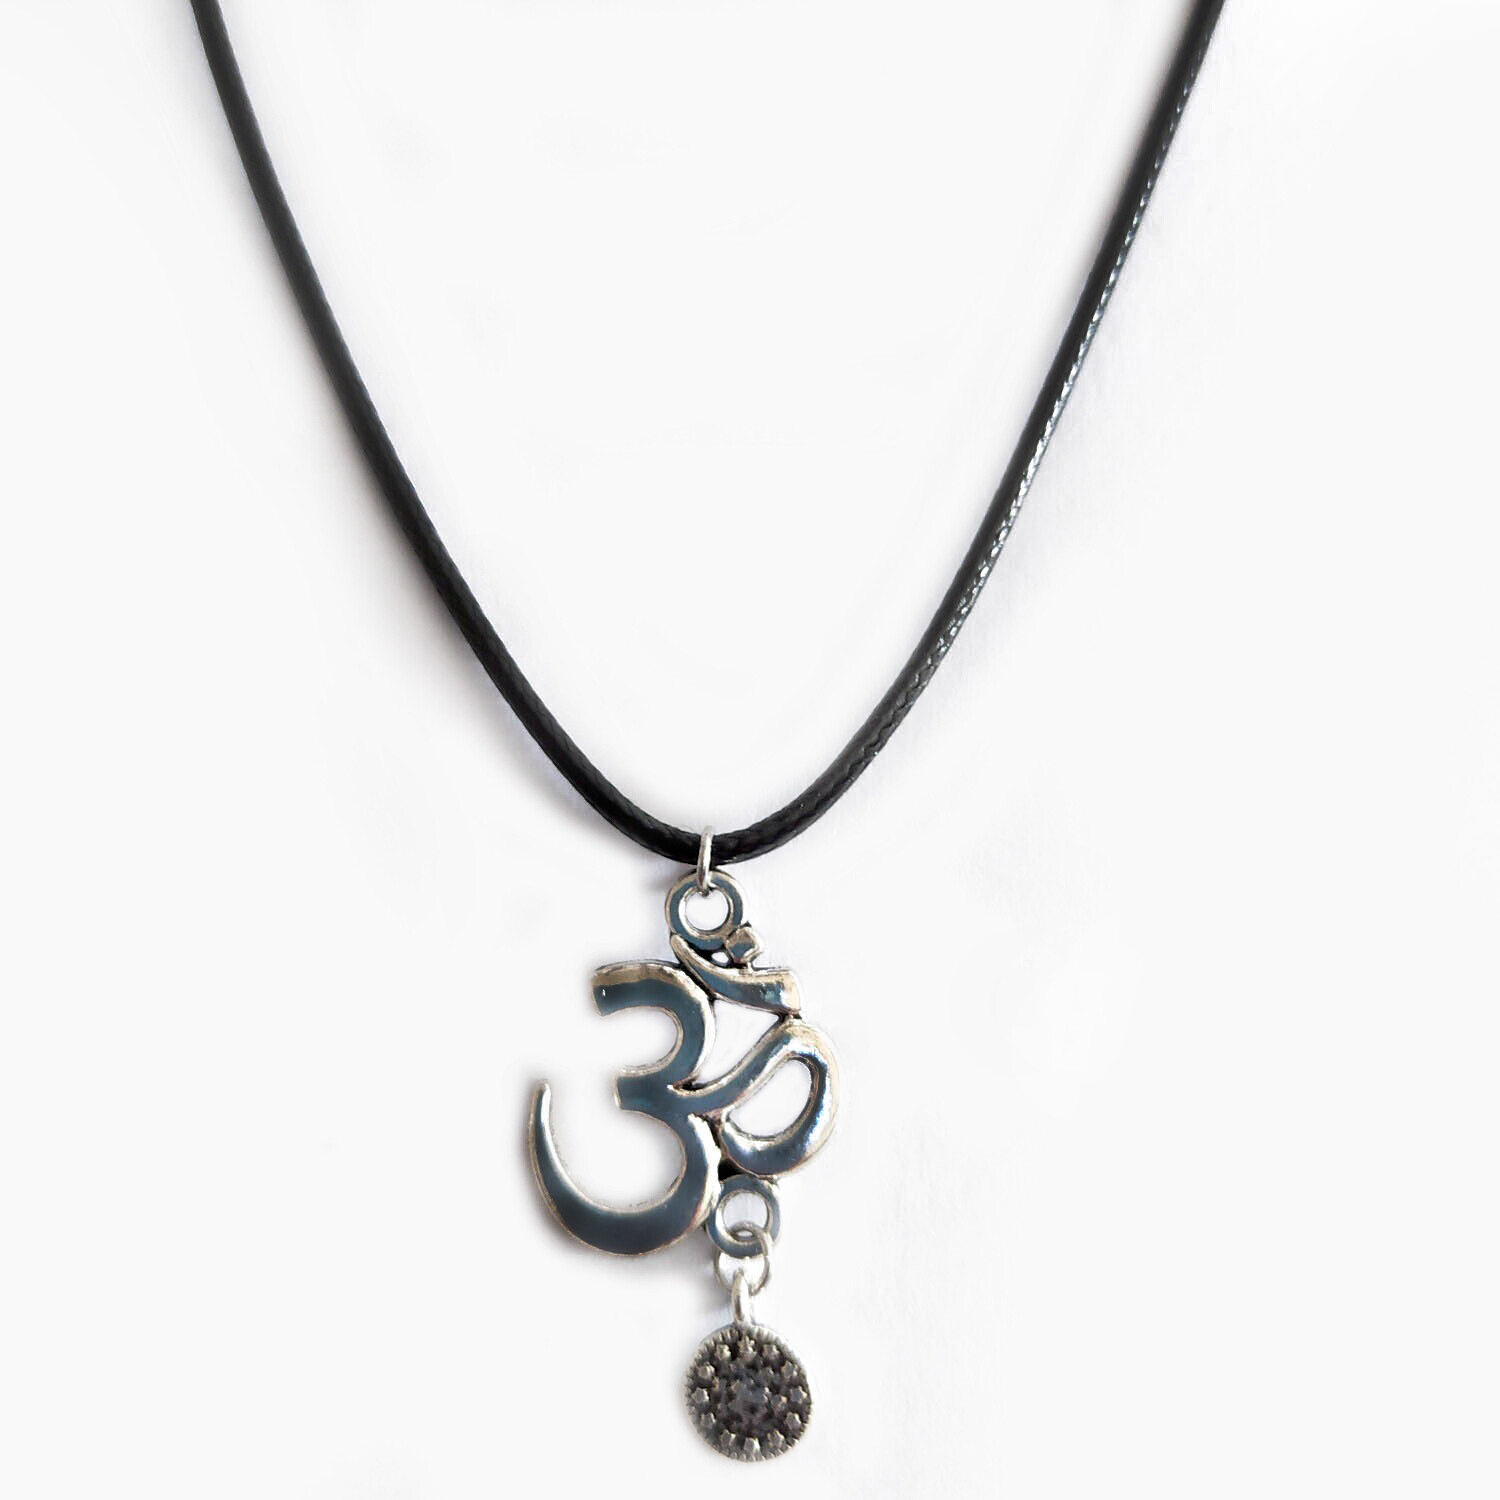 Aum necklace (cord)